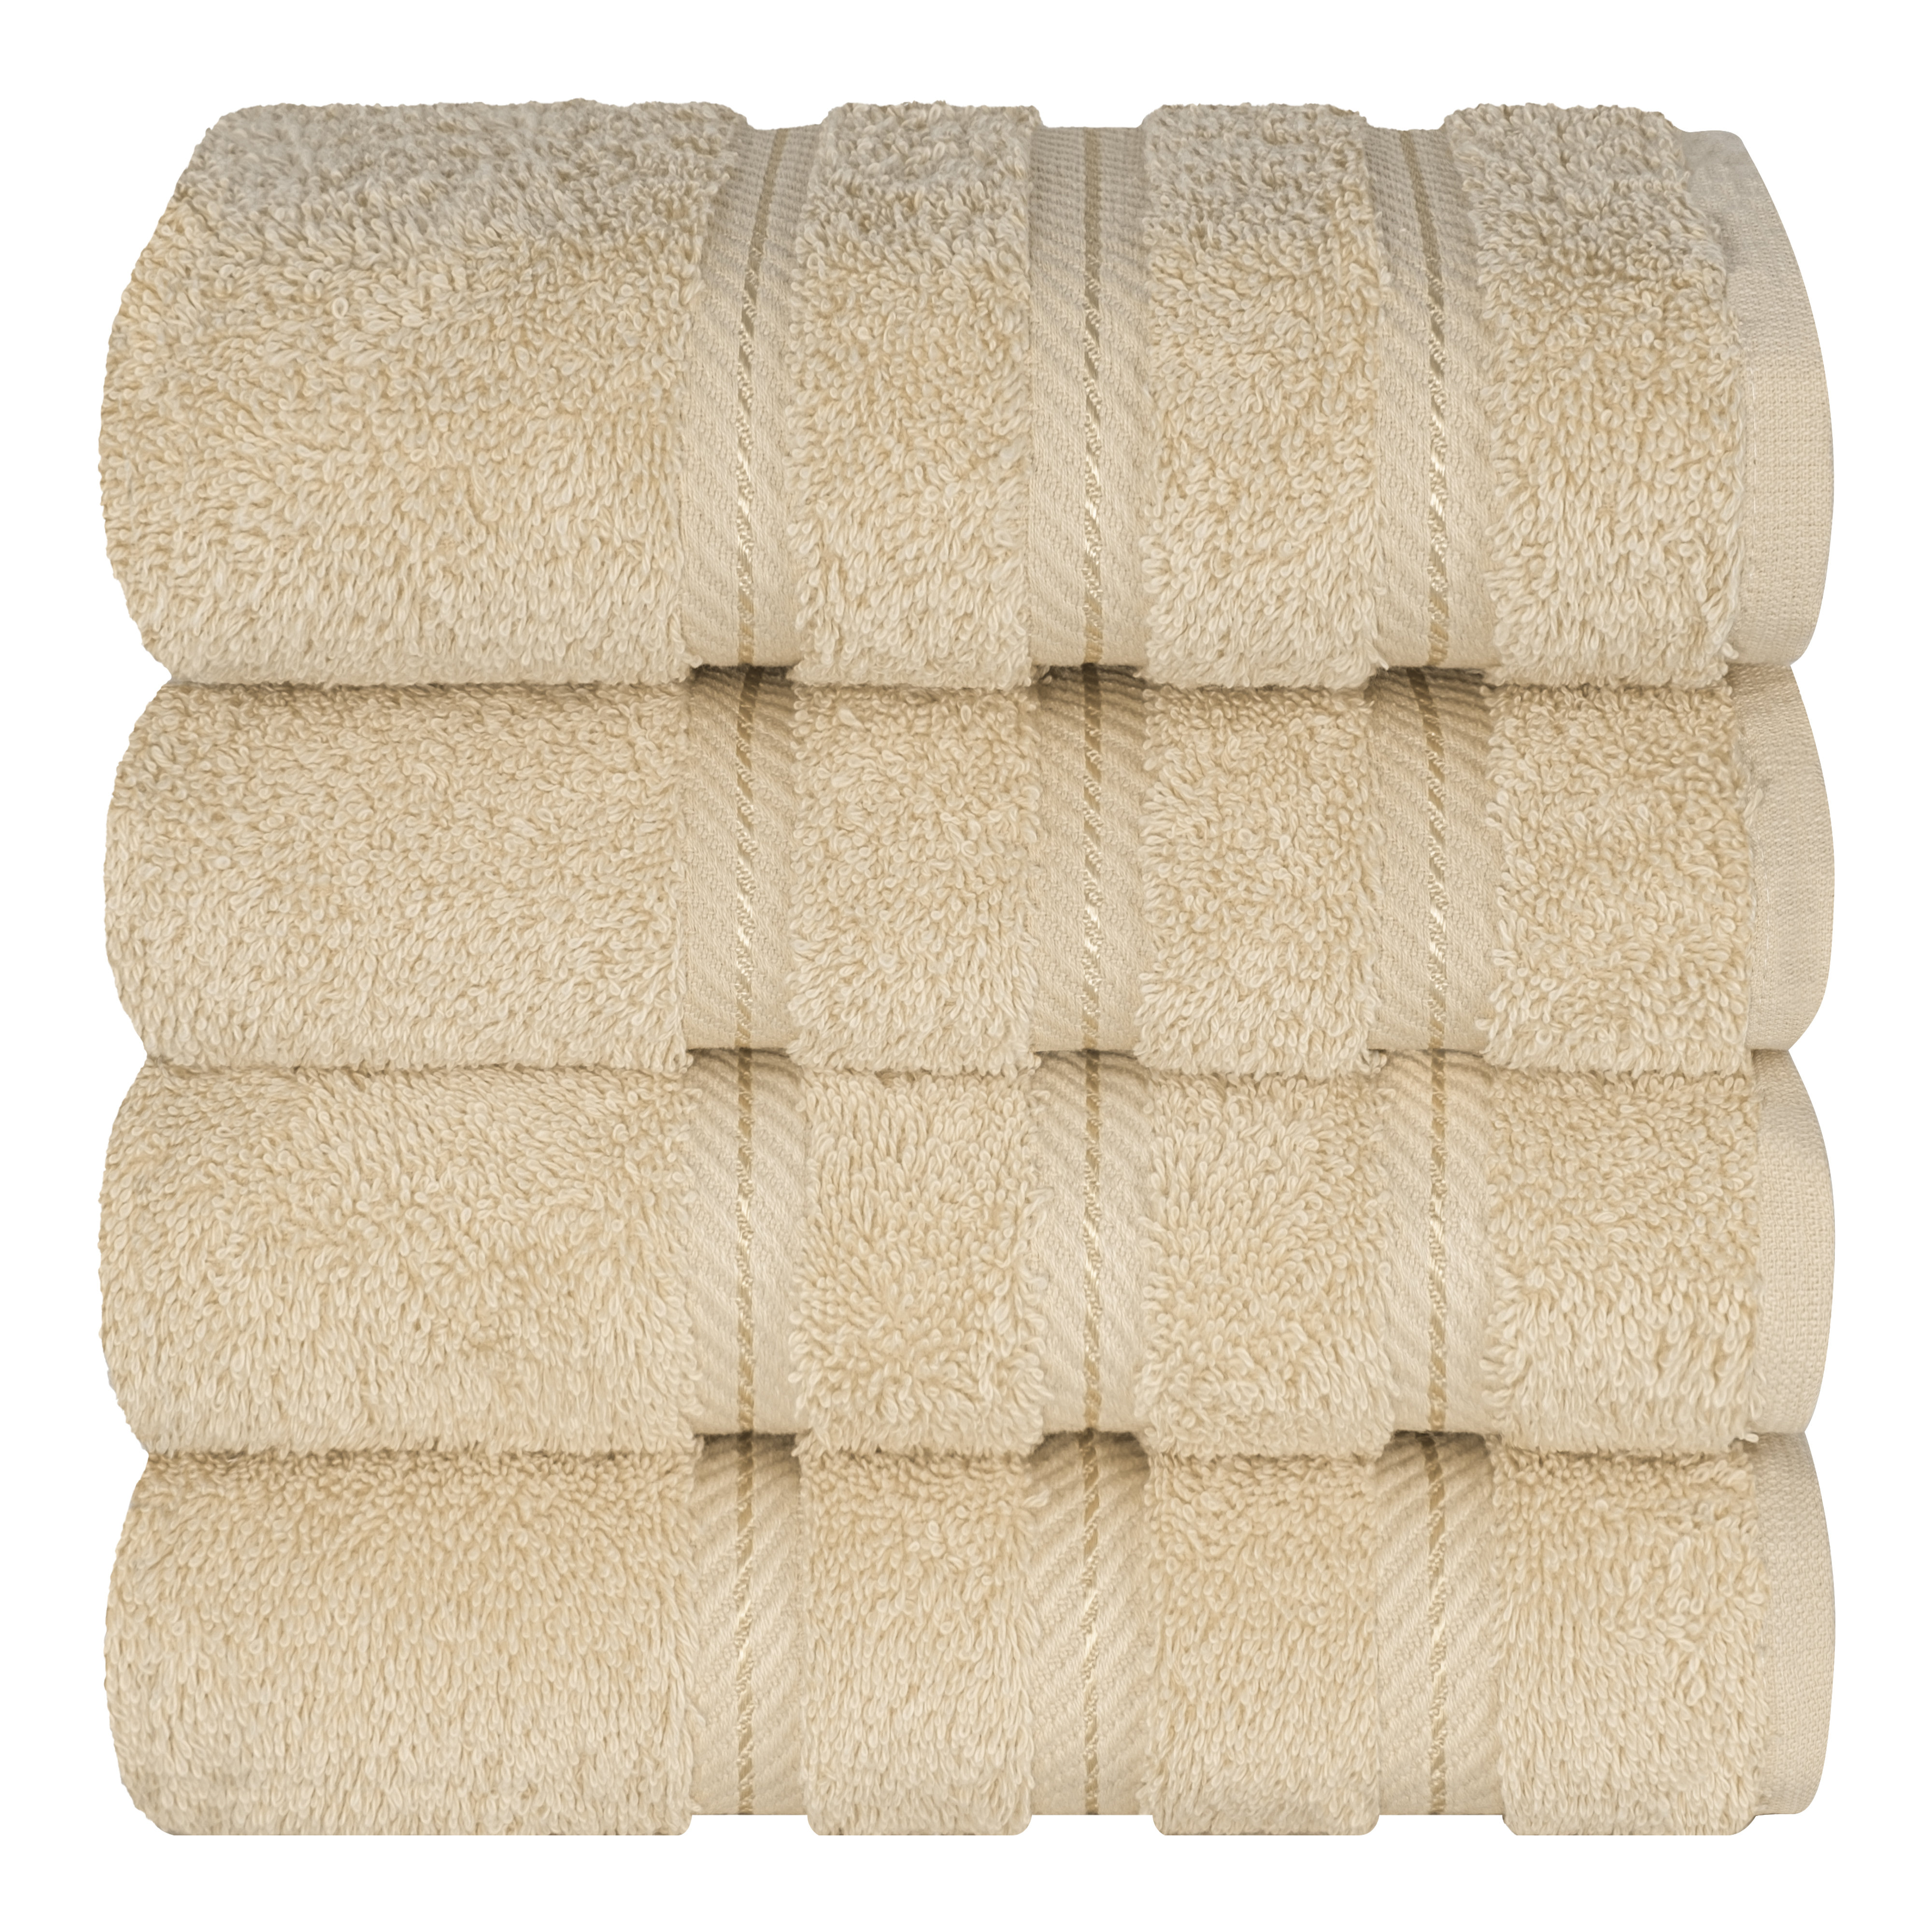 4 Pieces Towel Sets for Bathroom, Premium Turkish Cotton 2 Hand Towels 2 Bath  Towels Set (Beige)